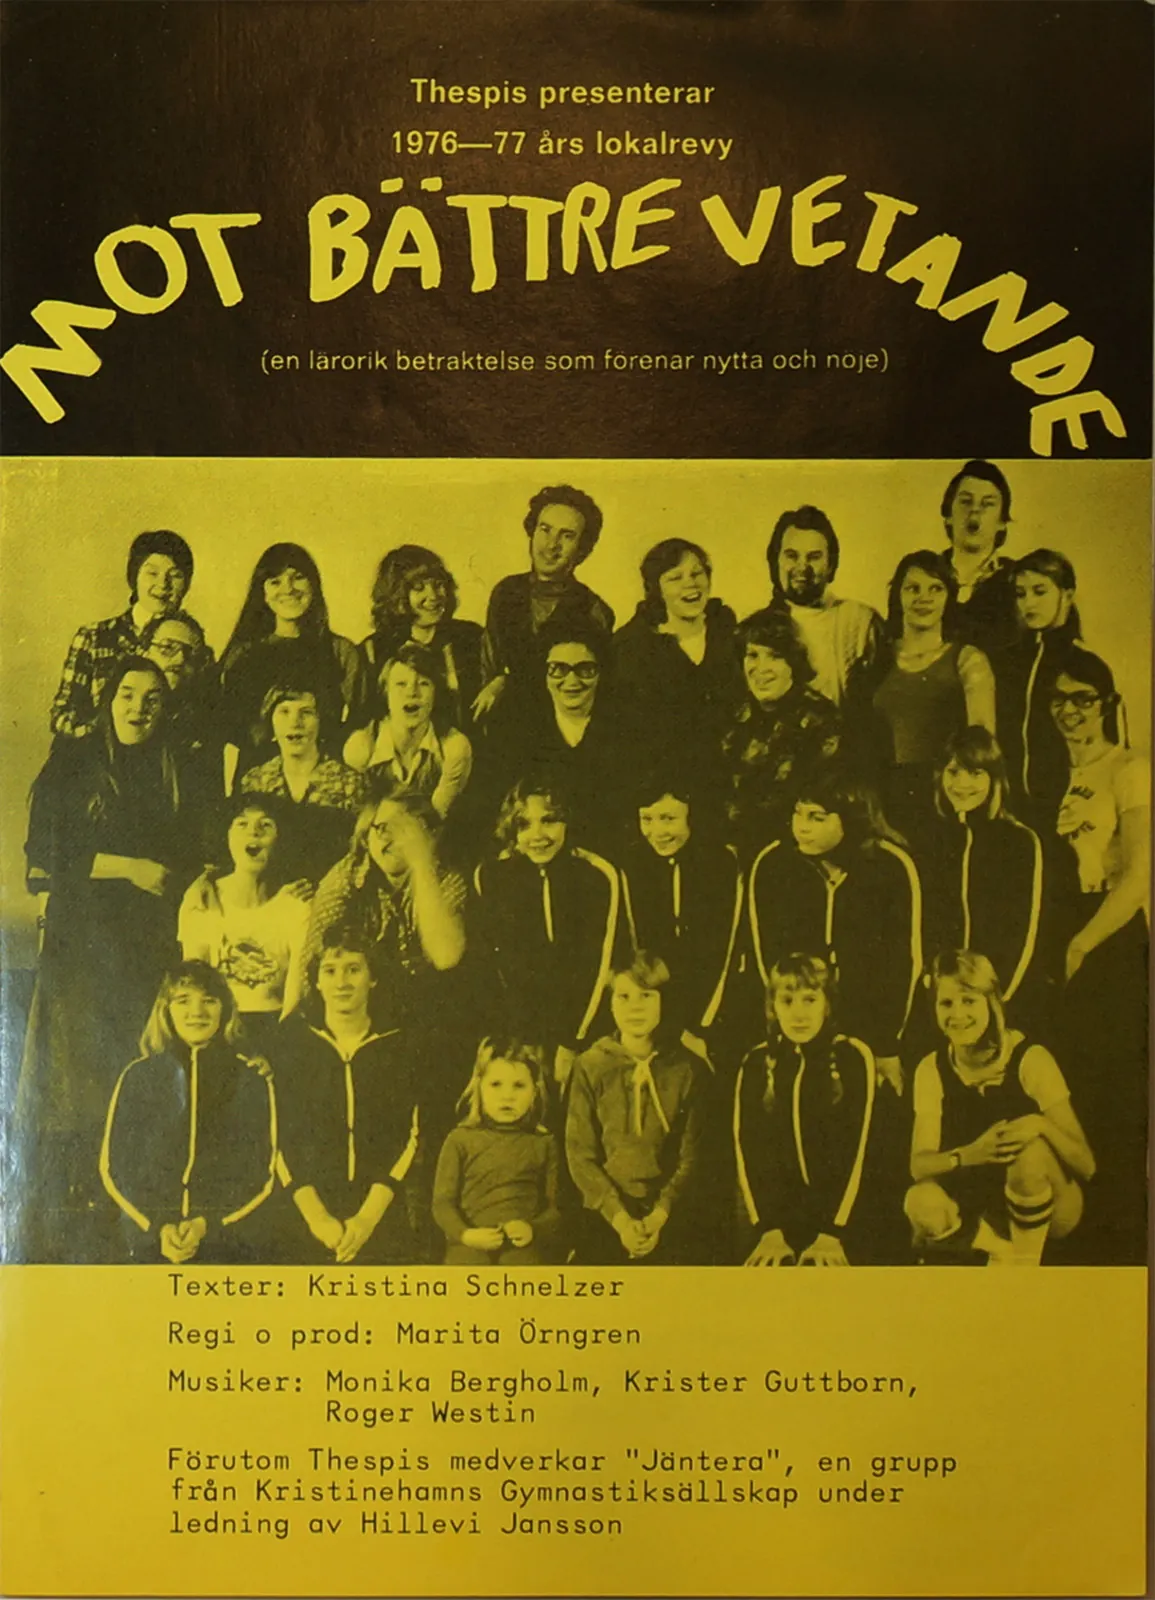 Mot battre vetande 1976-1977 - Theaterforningen Thespis nyårsrevy